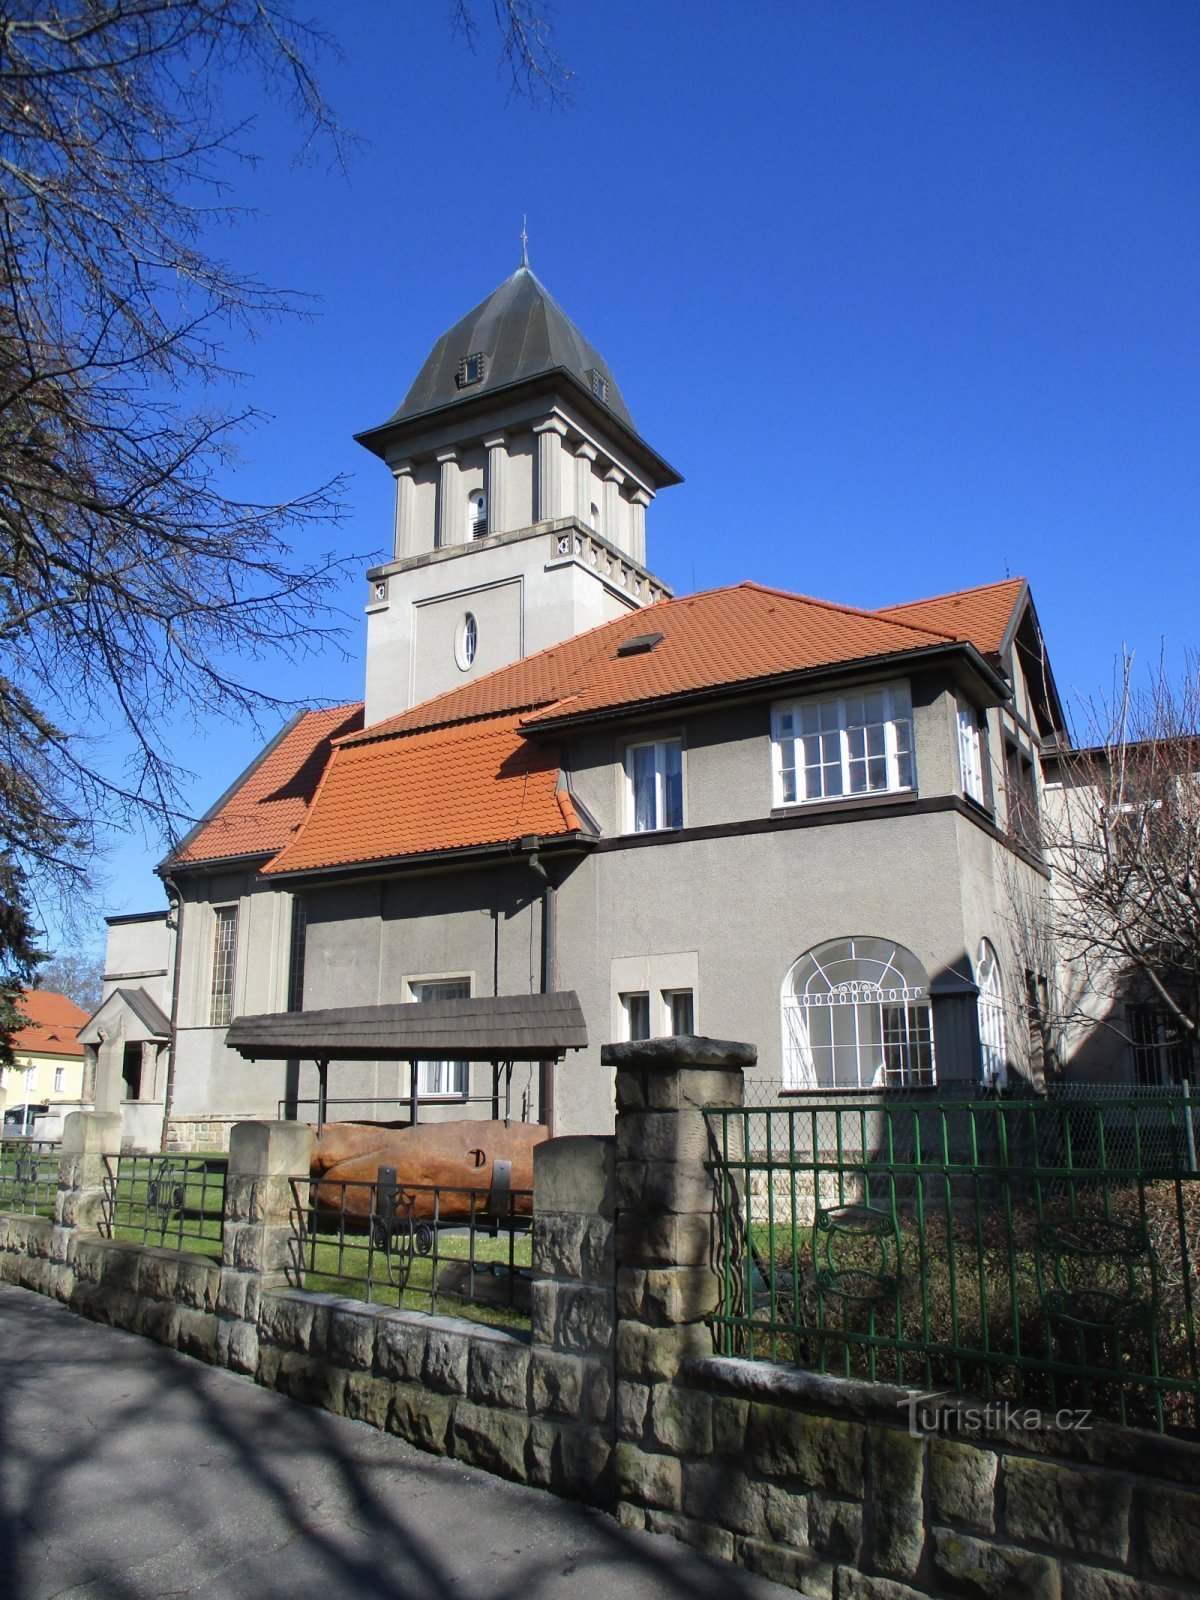 牧師館のある福音派教会 (Hradec Králové, 19.3.2020/XNUMX/XNUMX)